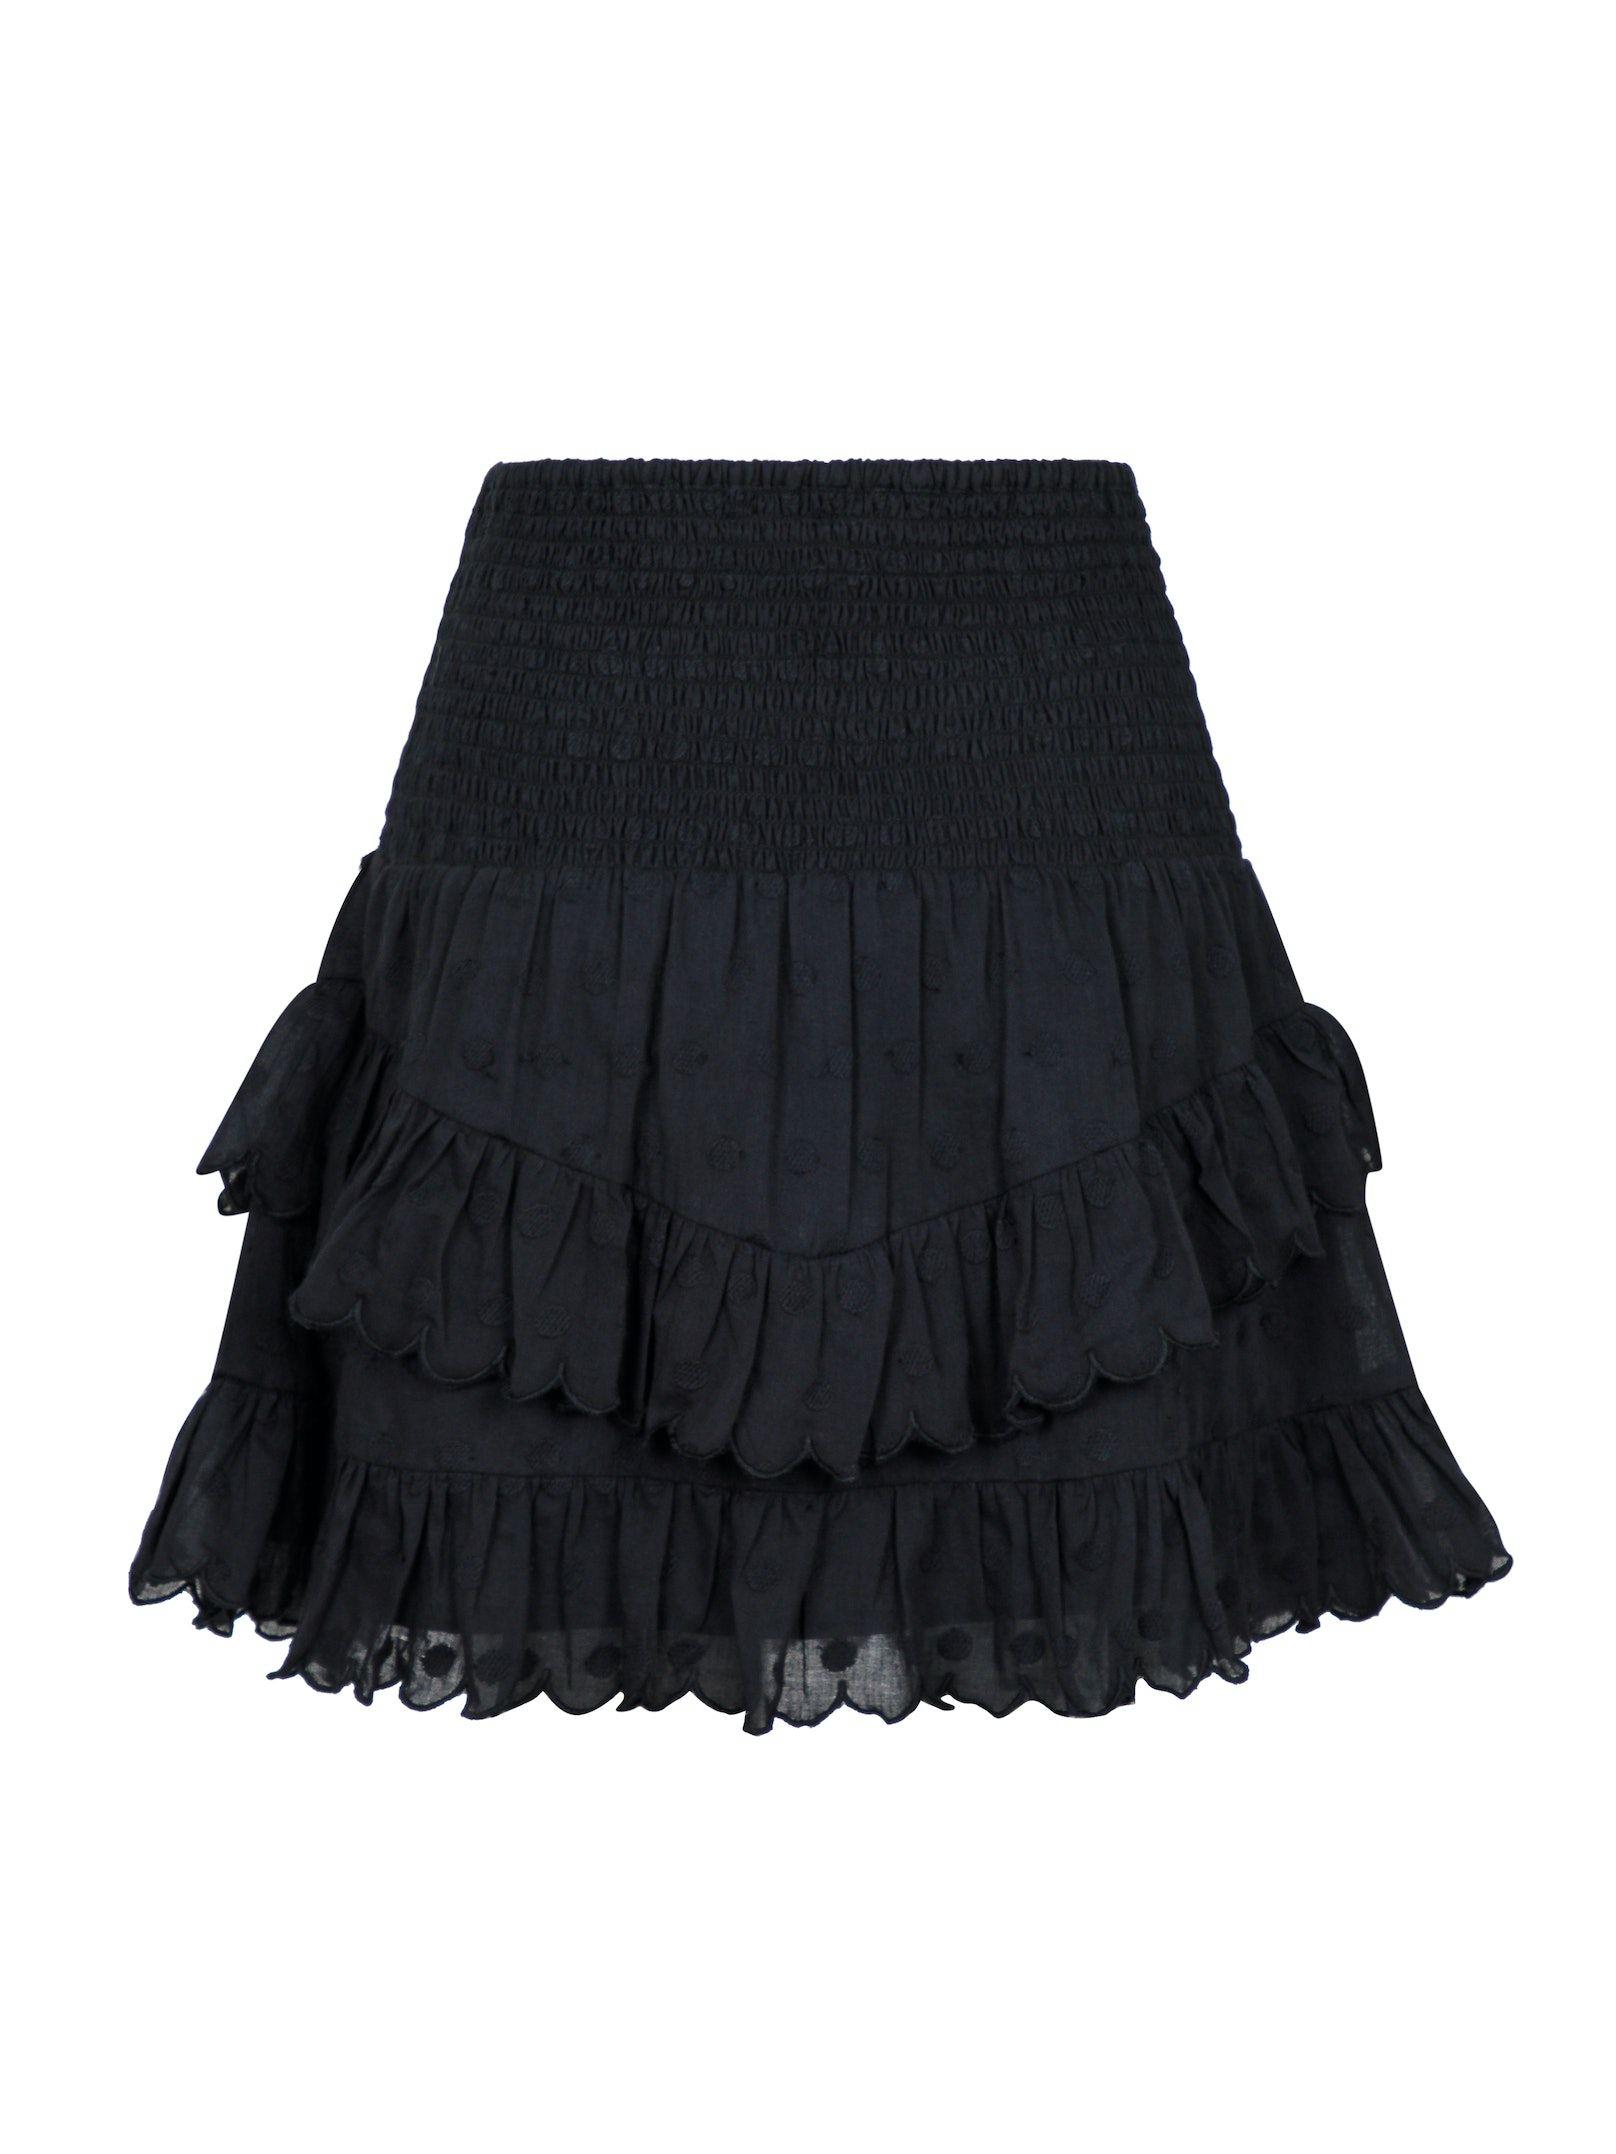 Neo - Gimie Dot Skirt Black